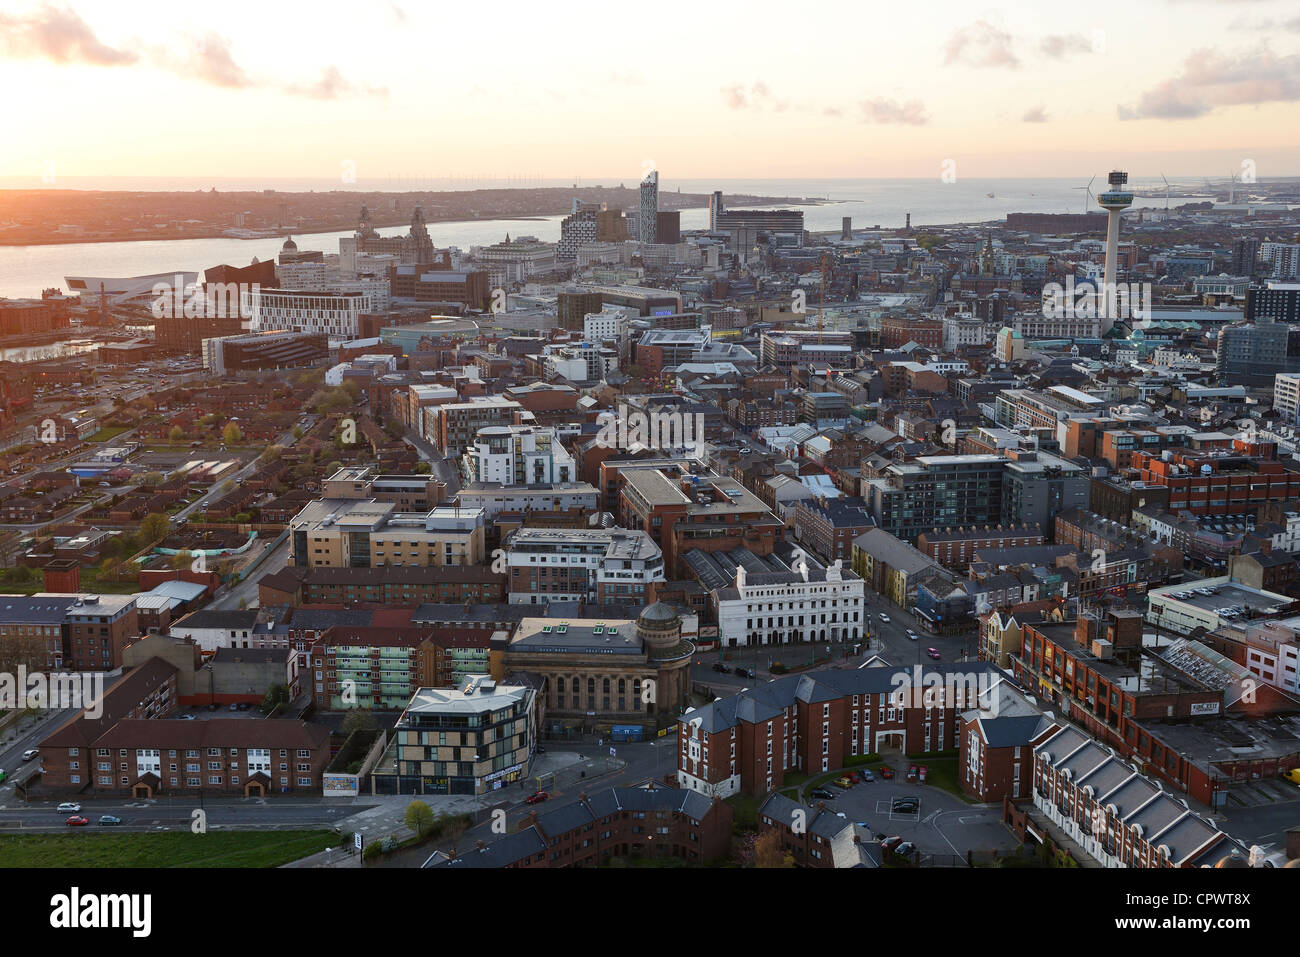 Le centre-ville de Liverpool au crépuscule Banque D'Images